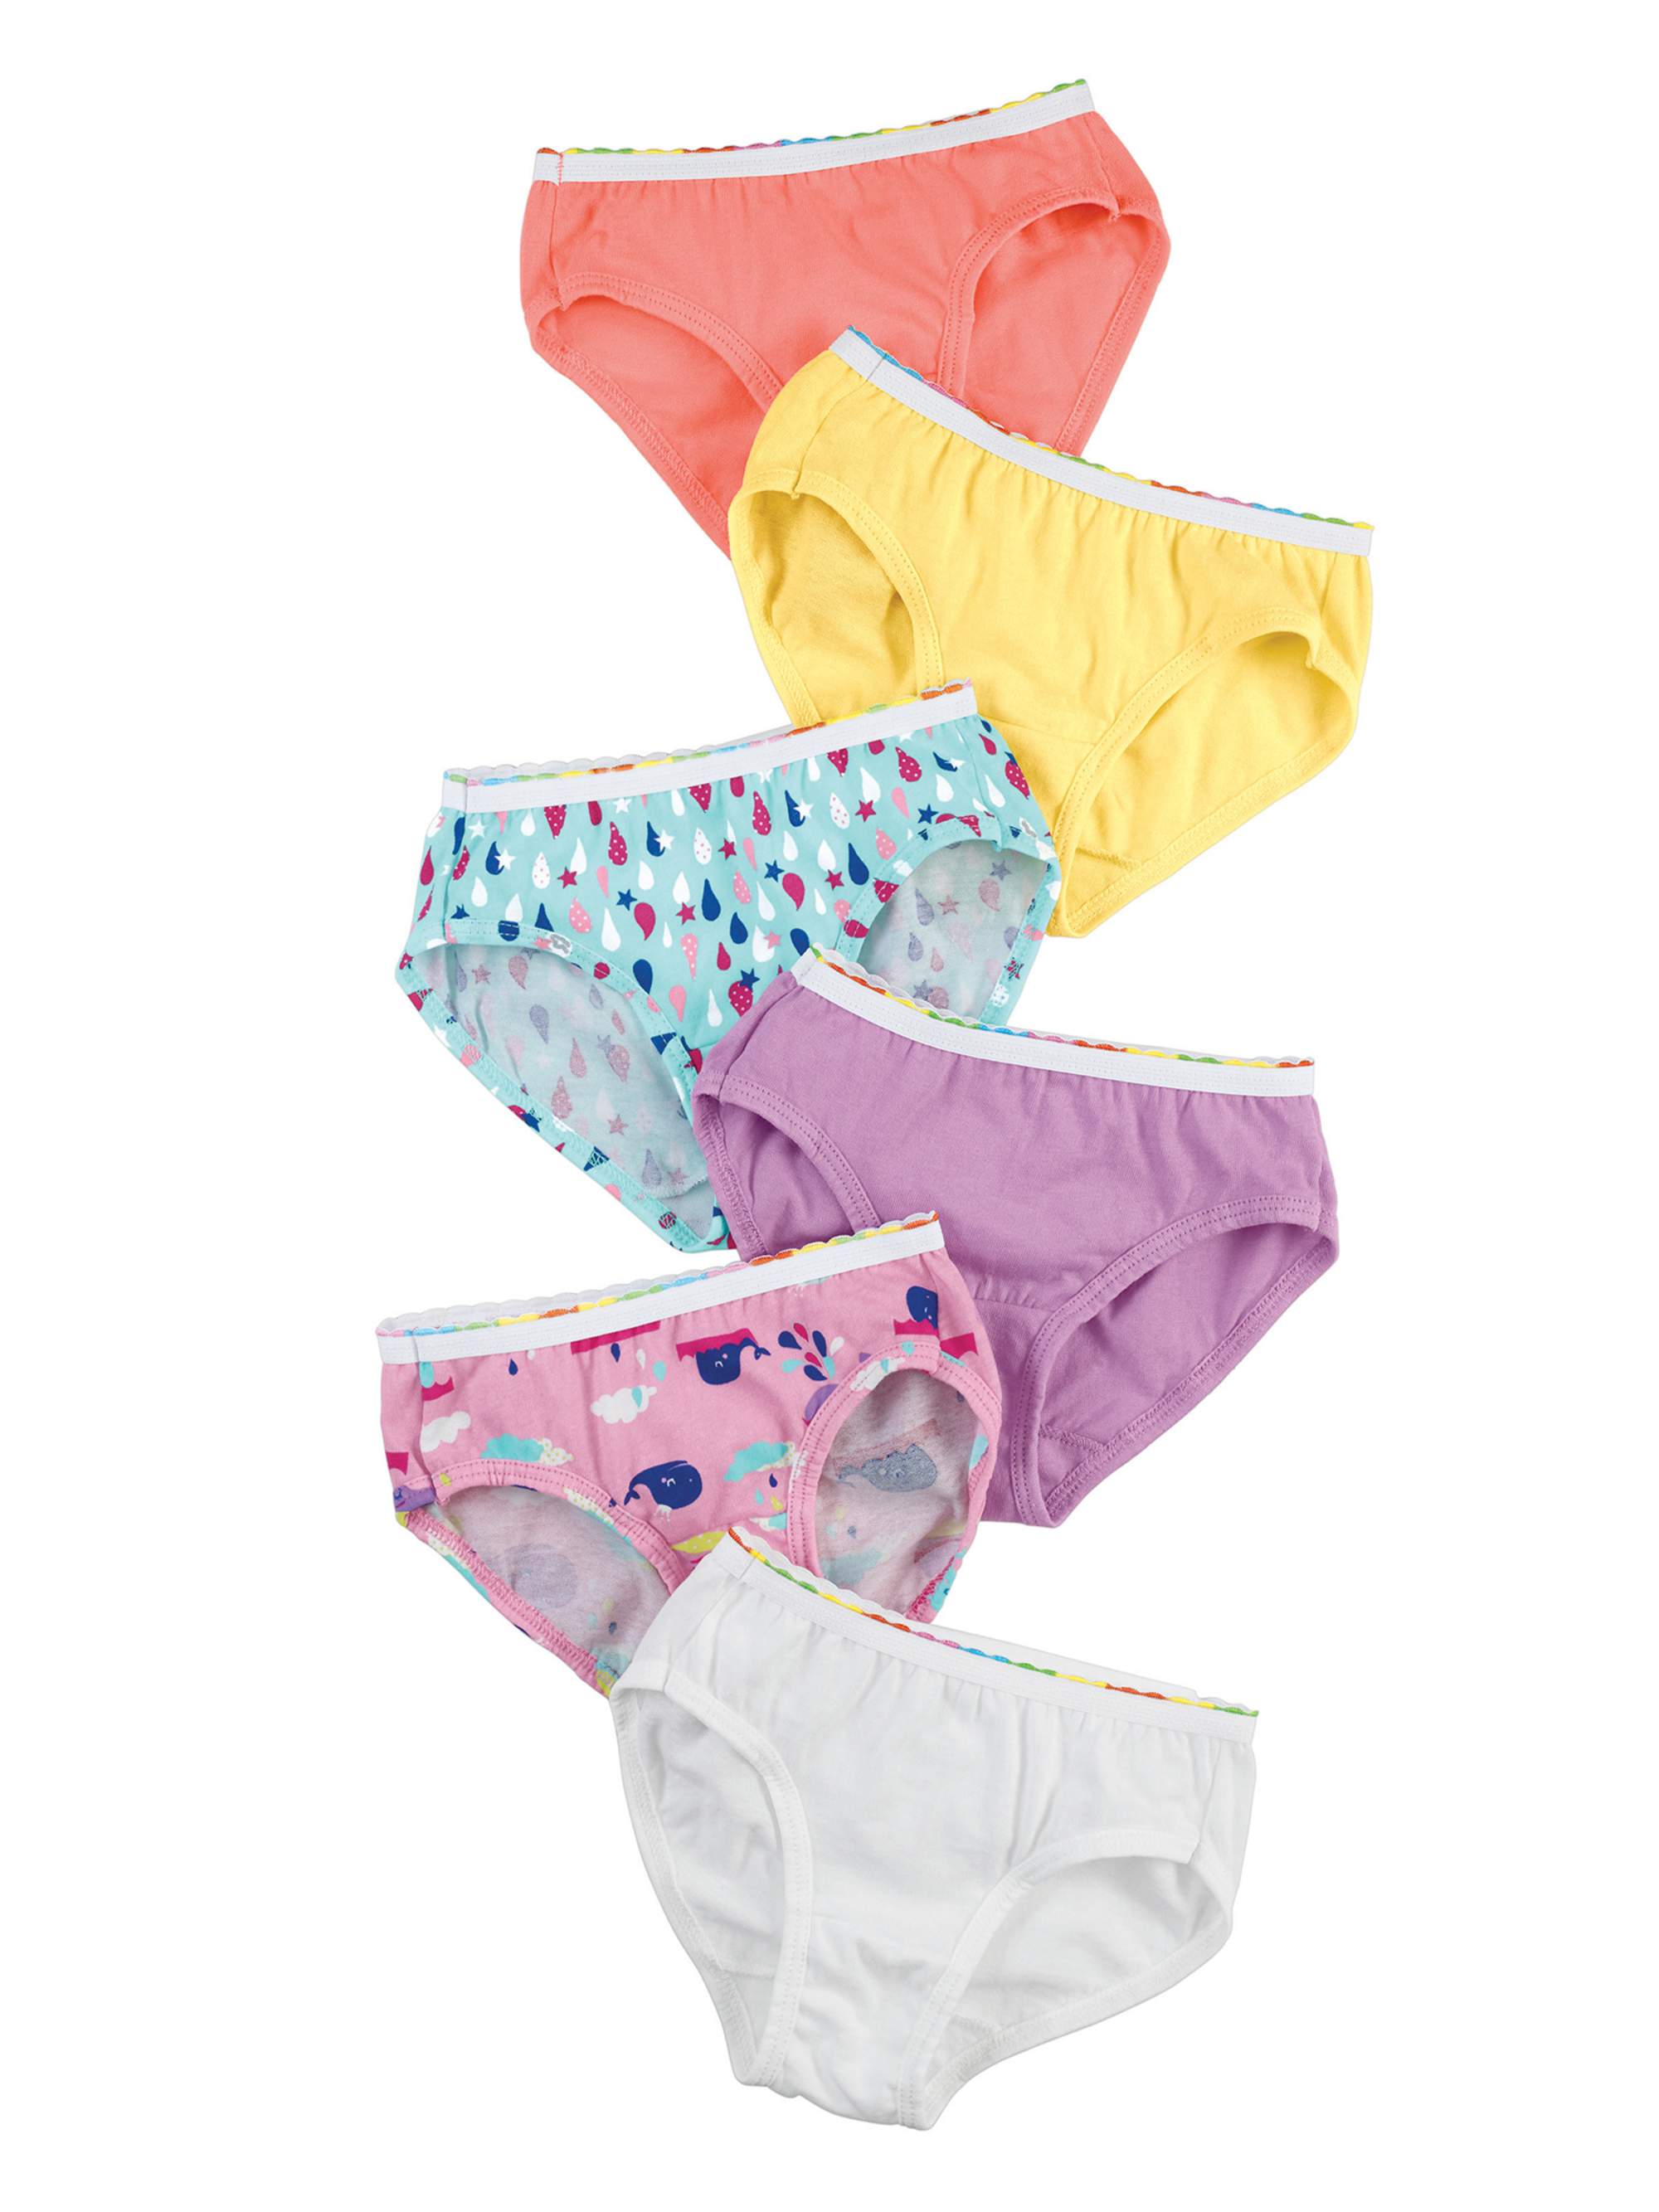 Hanes Underwear Tagless Brief Underwear, 6 Pack (Toddler Girls) - image 1 of 2